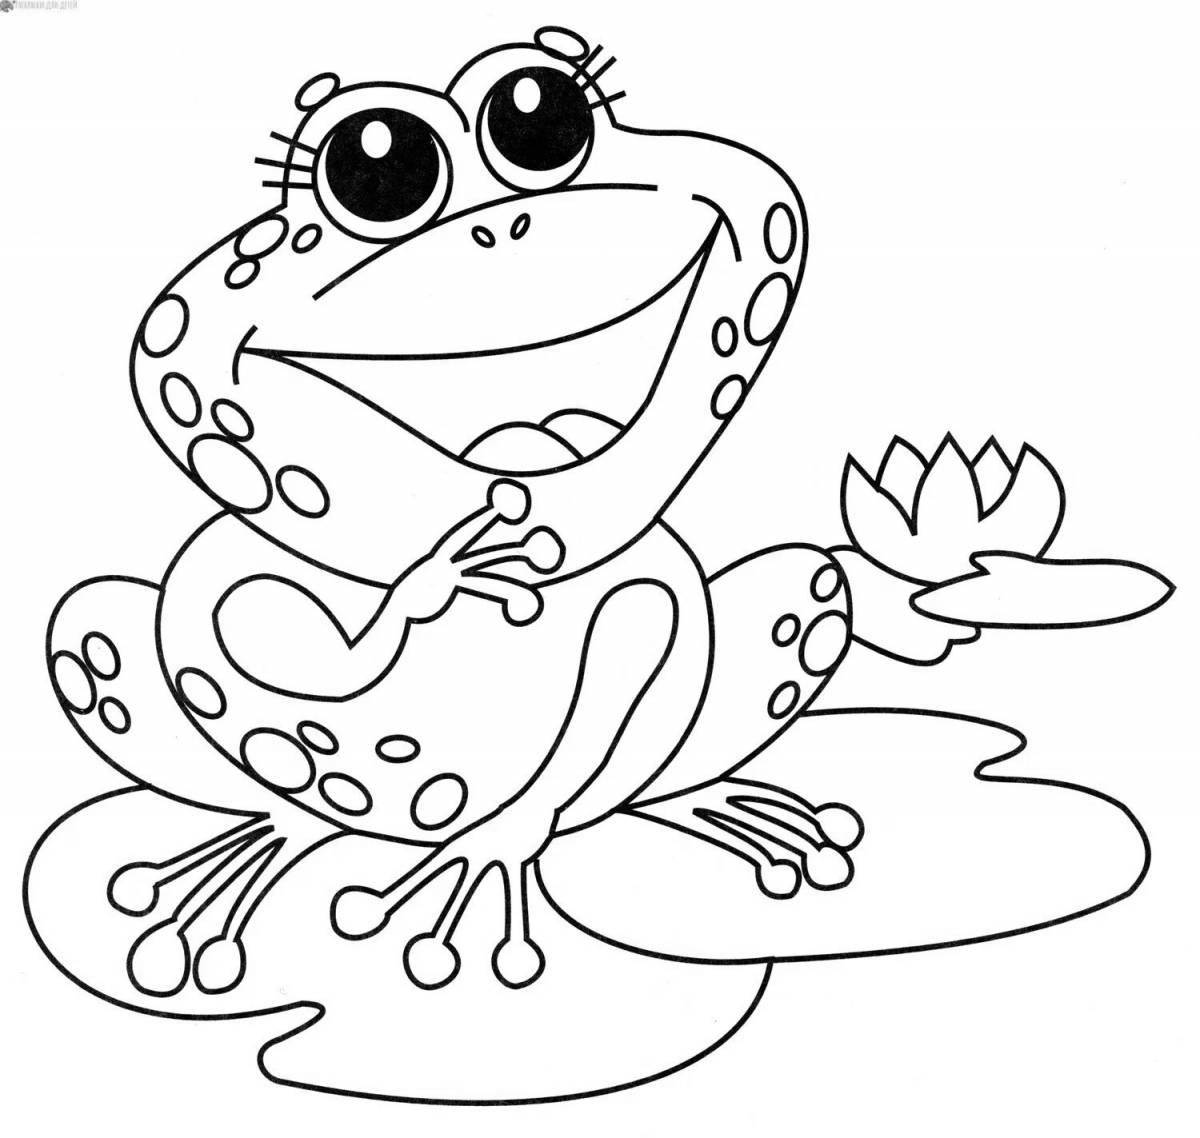 Прекрасный рисунок лягушки для детей